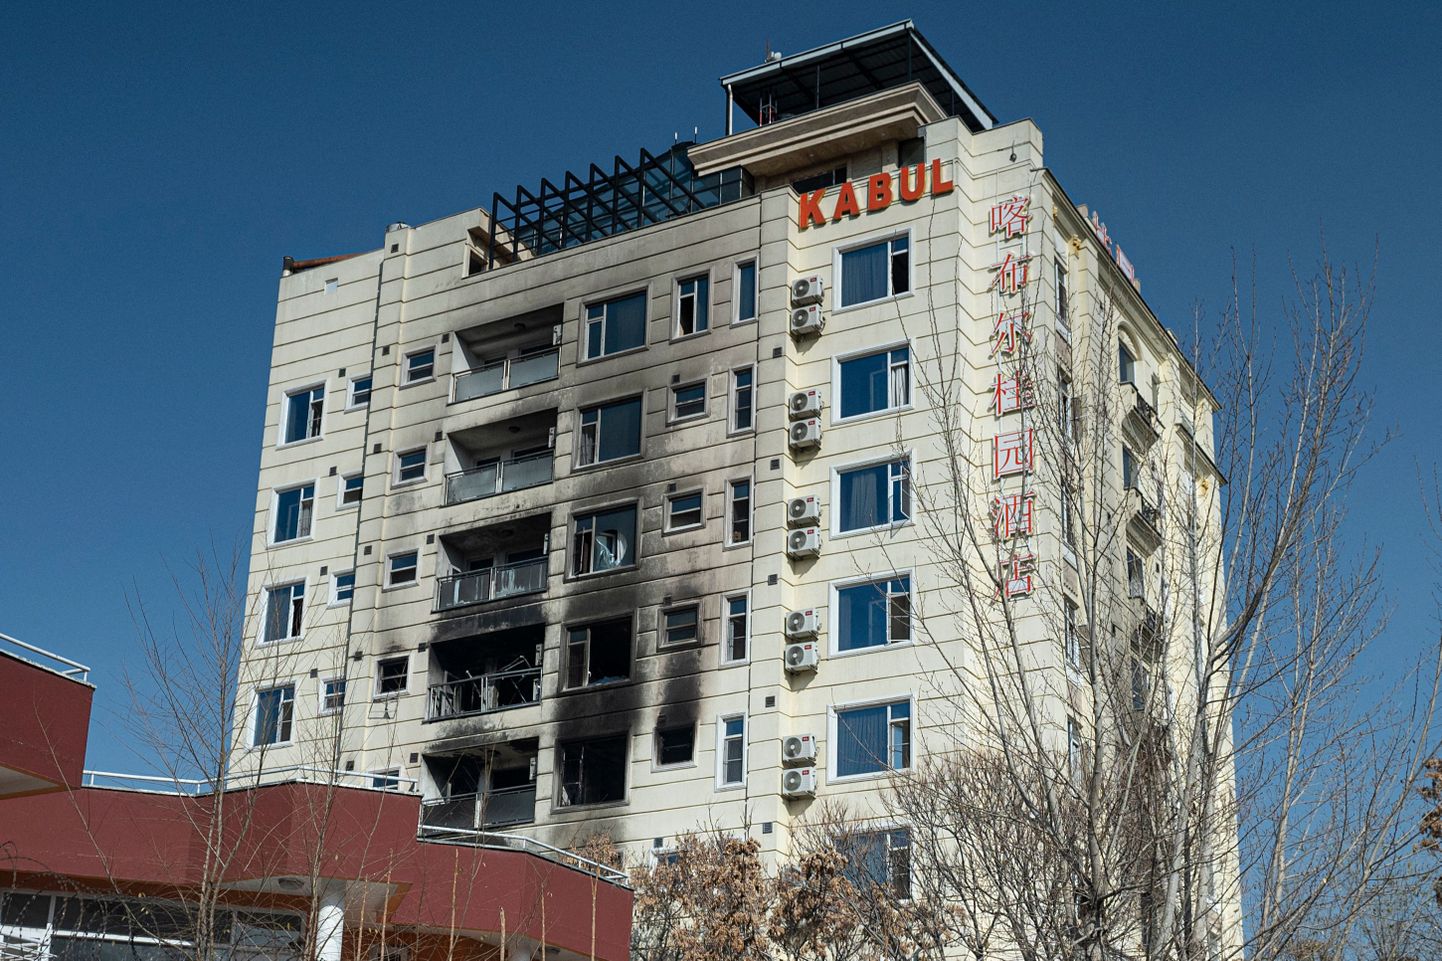 Kabulis 12. detsembril äärmusrühmituse Islamiriik rünnaku alla sattunud hotell.